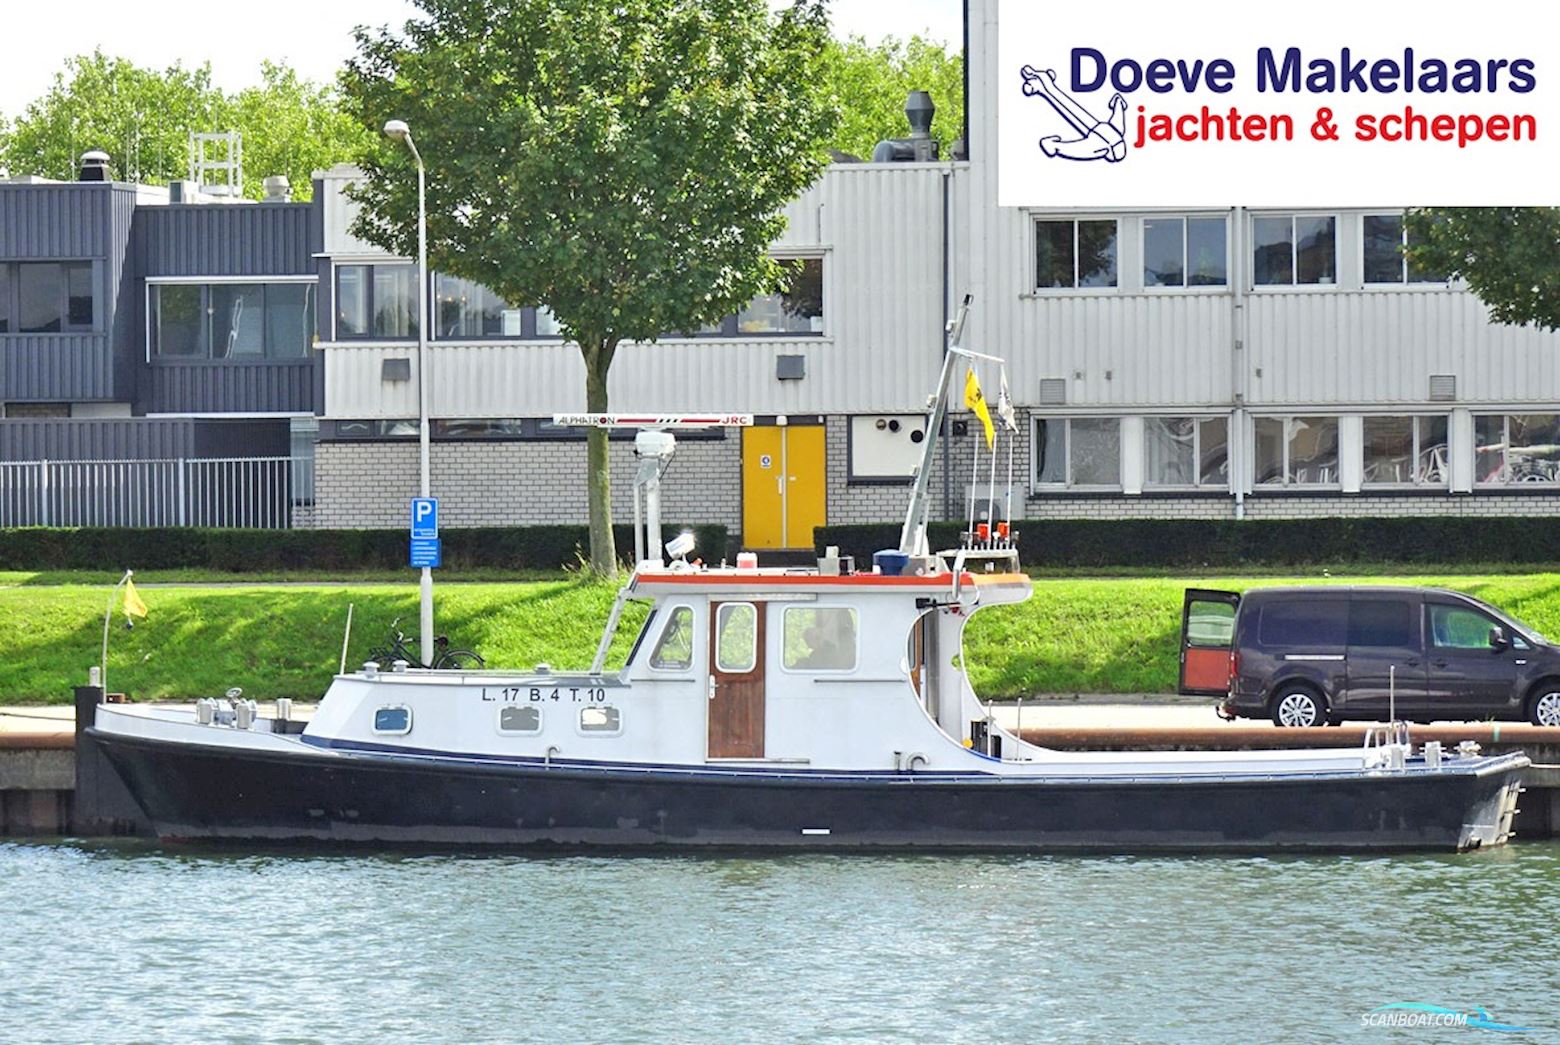 Duwsleepboot Werkvaartuig 16.85, Cvo Rijn Huizen aan water 1965, met John Deere<br />6068Tfm75 motor, The Netherlands